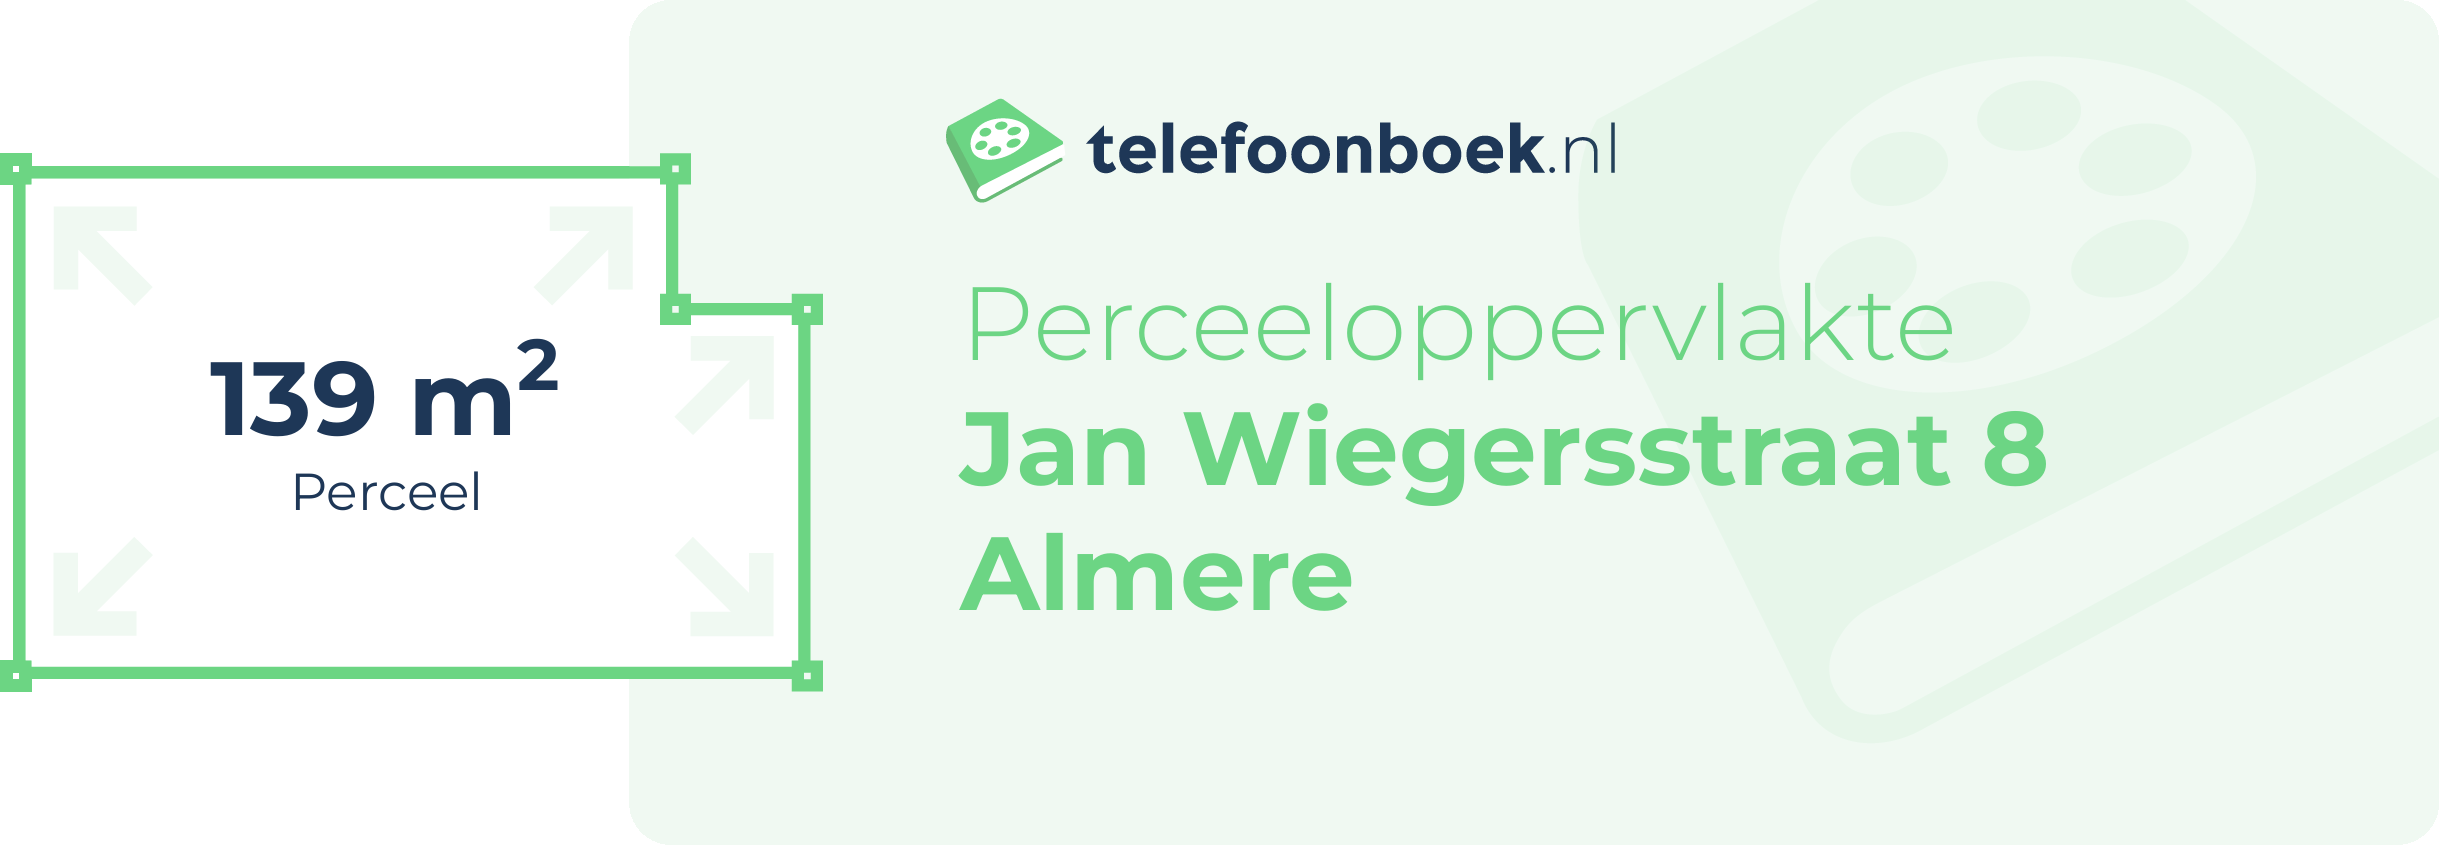 Perceeloppervlakte Jan Wiegersstraat 8 Almere